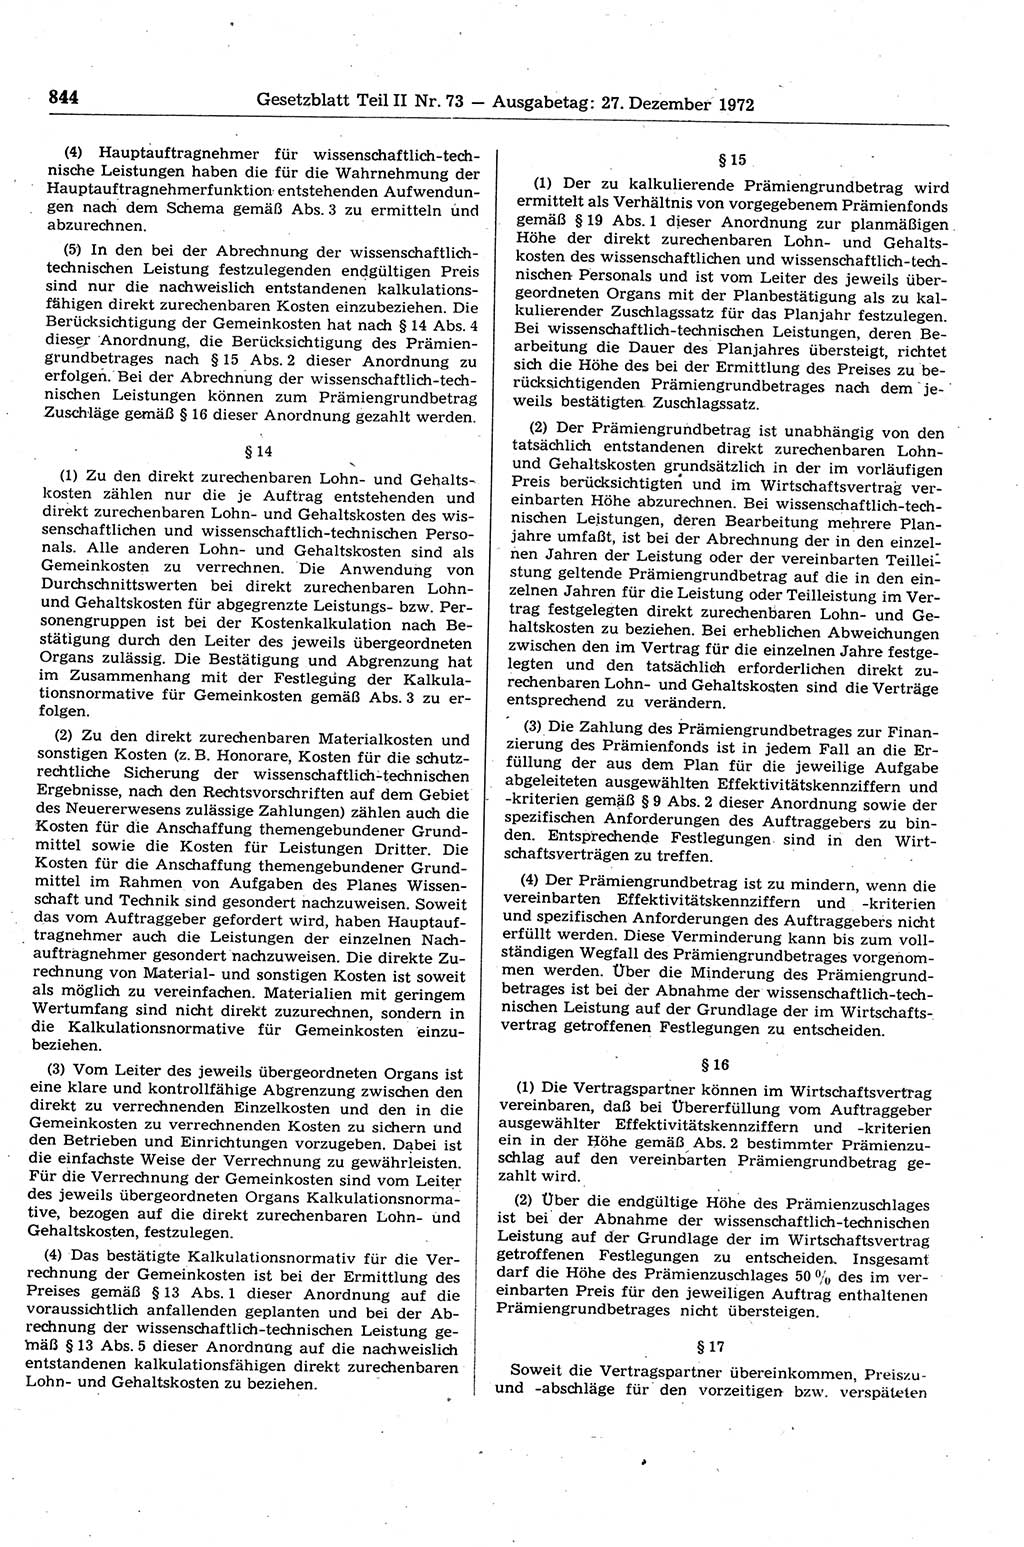 Gesetzblatt (GBl.) der Deutschen Demokratischen Republik (DDR) Teil ⅠⅠ 1972, Seite 844 (GBl. DDR ⅠⅠ 1972, S. 844)